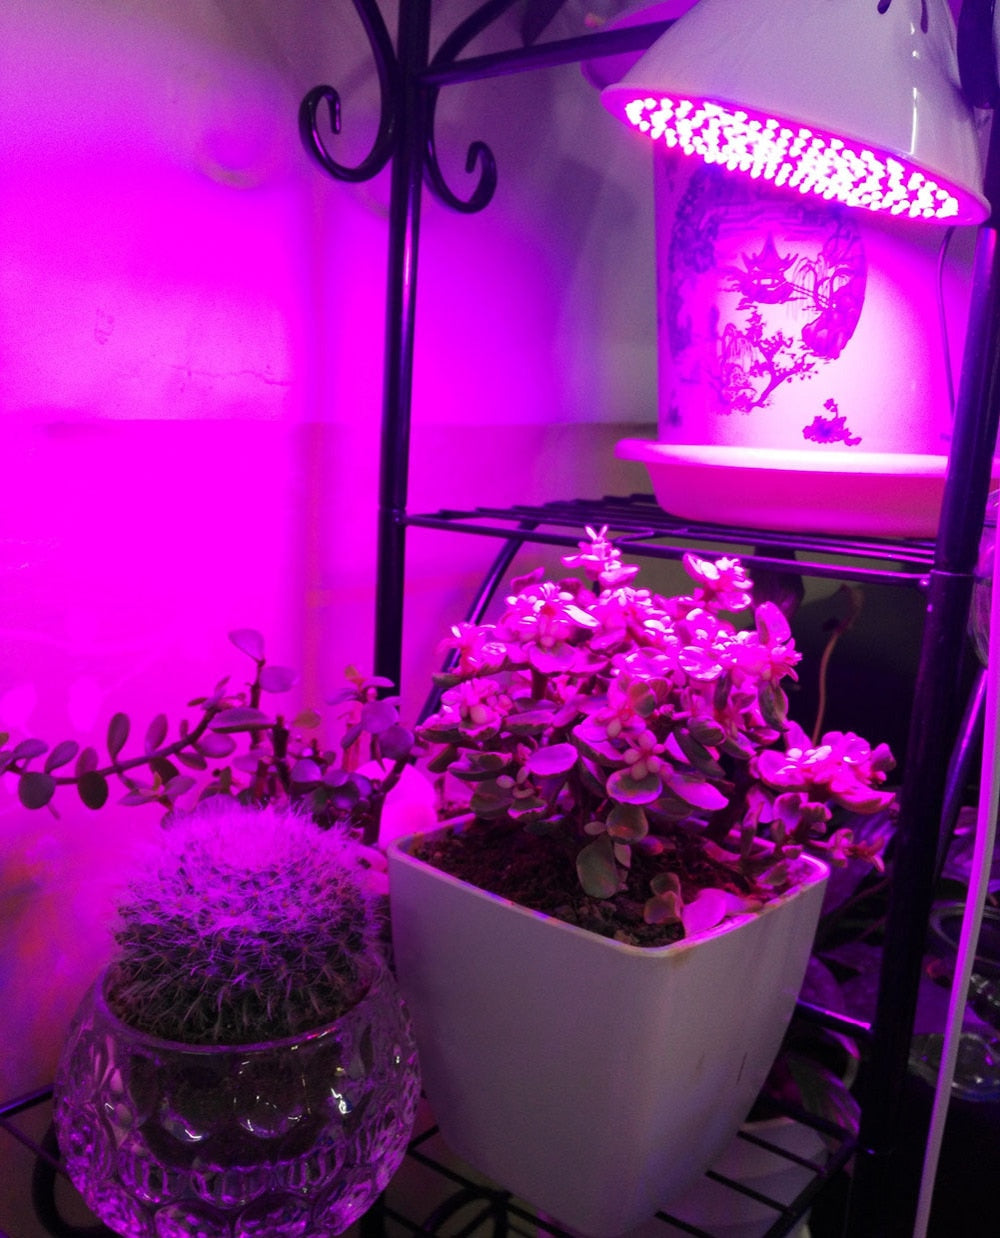 Full spectrum Plant Grow Led Light Bulbs Lamp lighting for Seeds hydro Flower Greenhouse Veg Indoor garden E27 phyto growbox - JustgreenBox